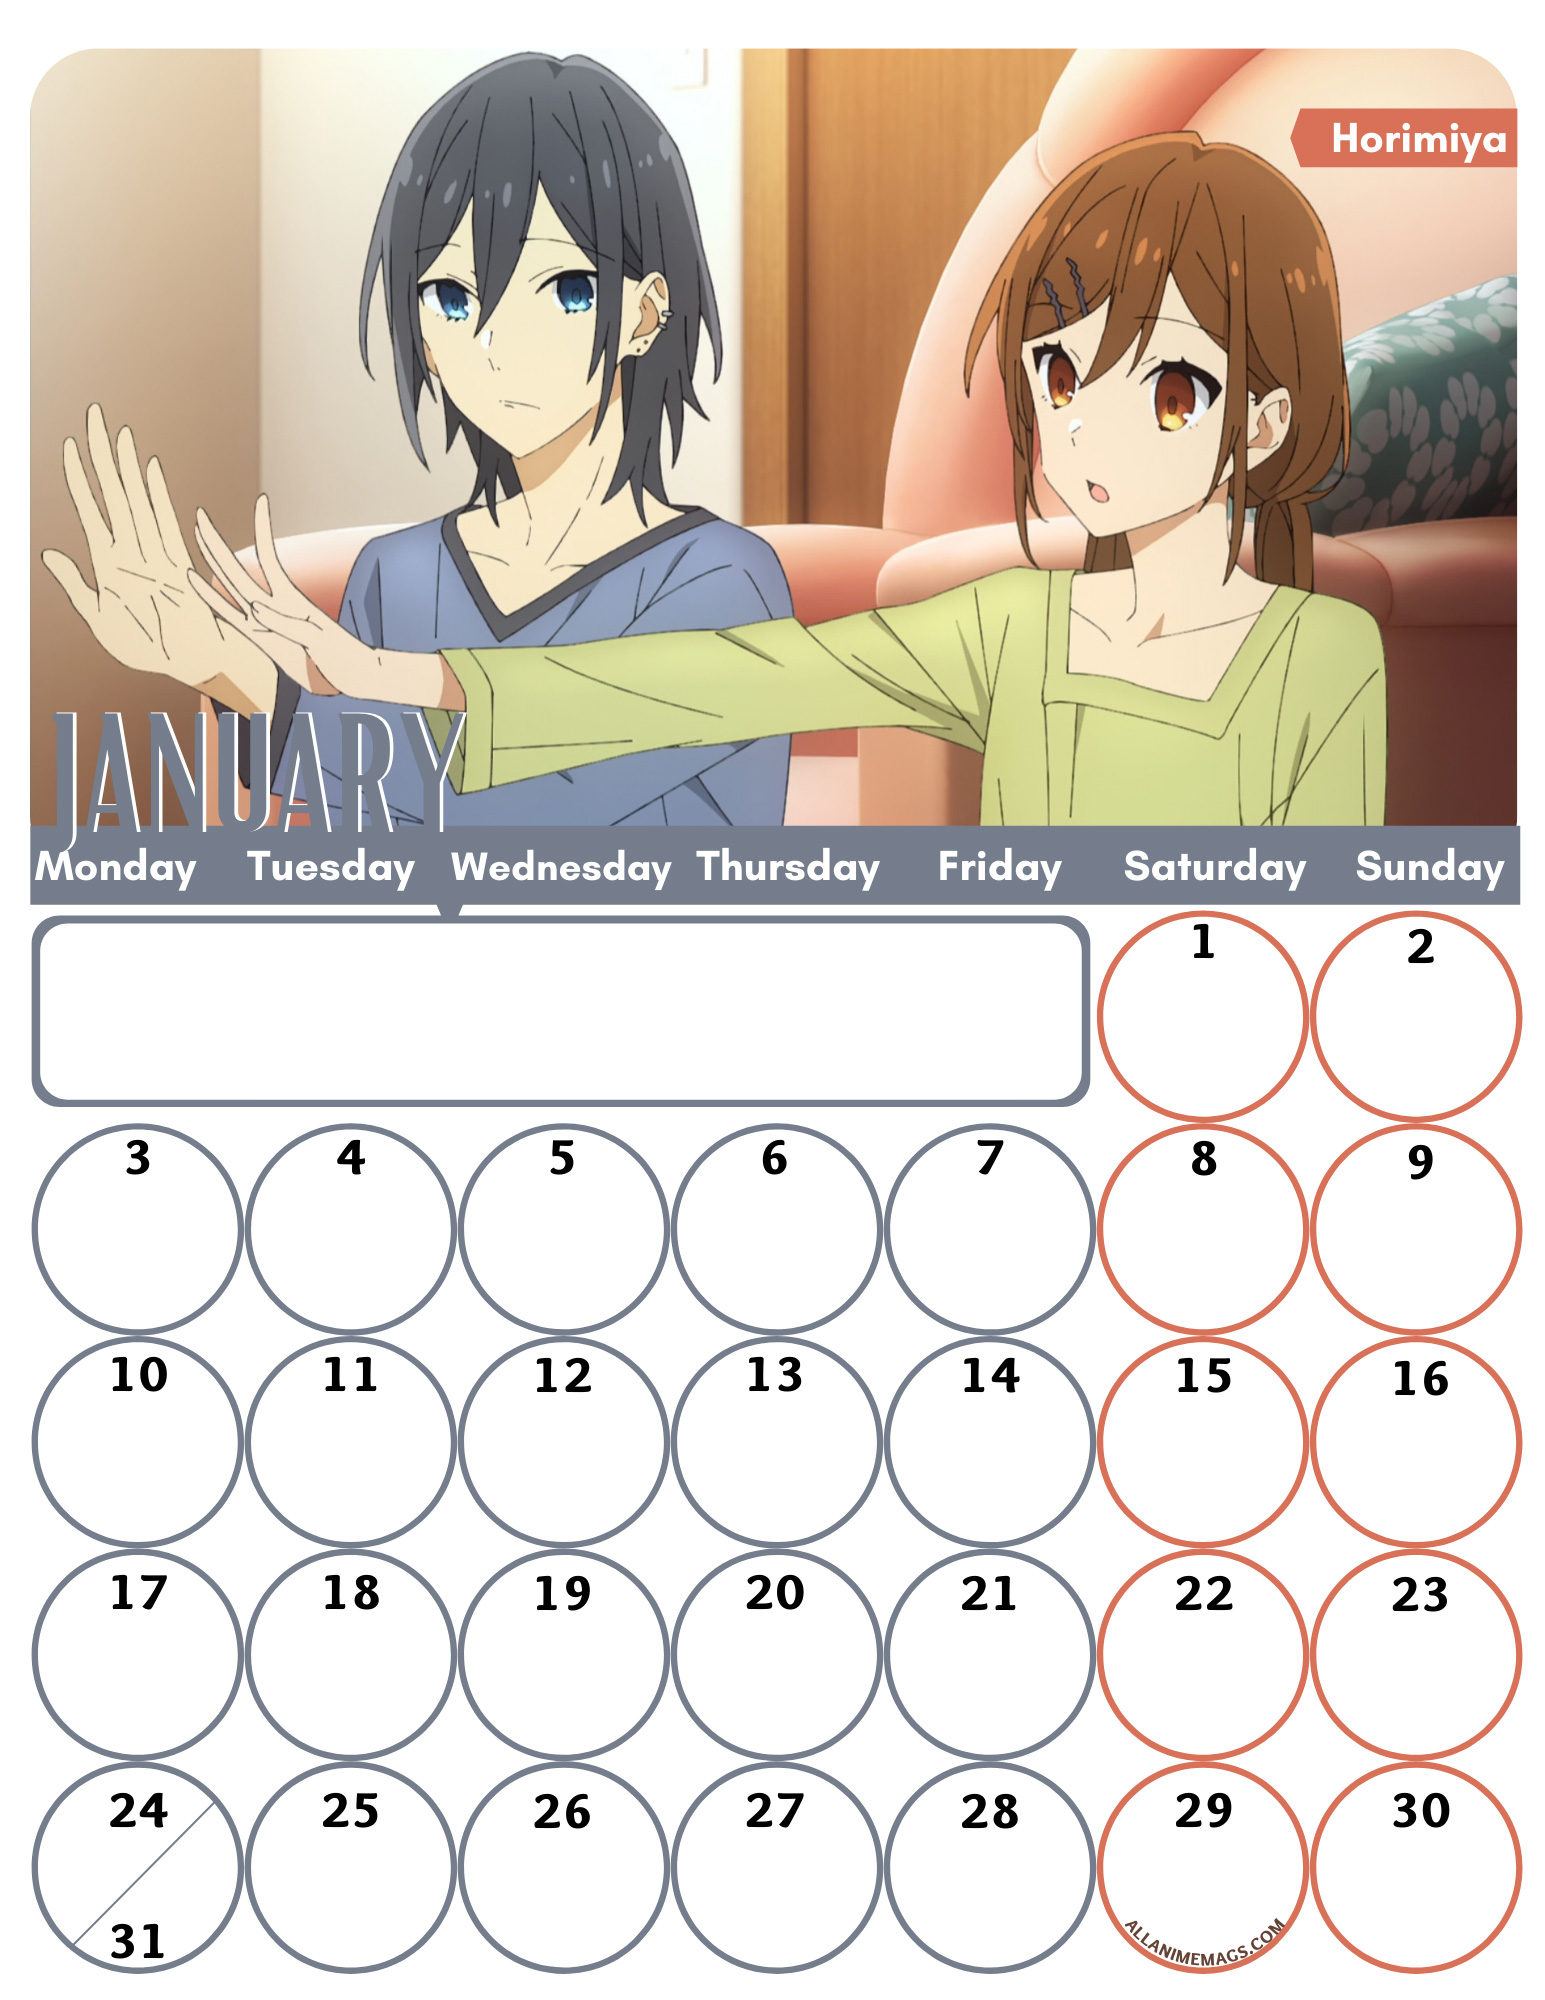 01-January-Romance-Anime-Wall-Calendar-2022-AllAnimeMag-Horimiya